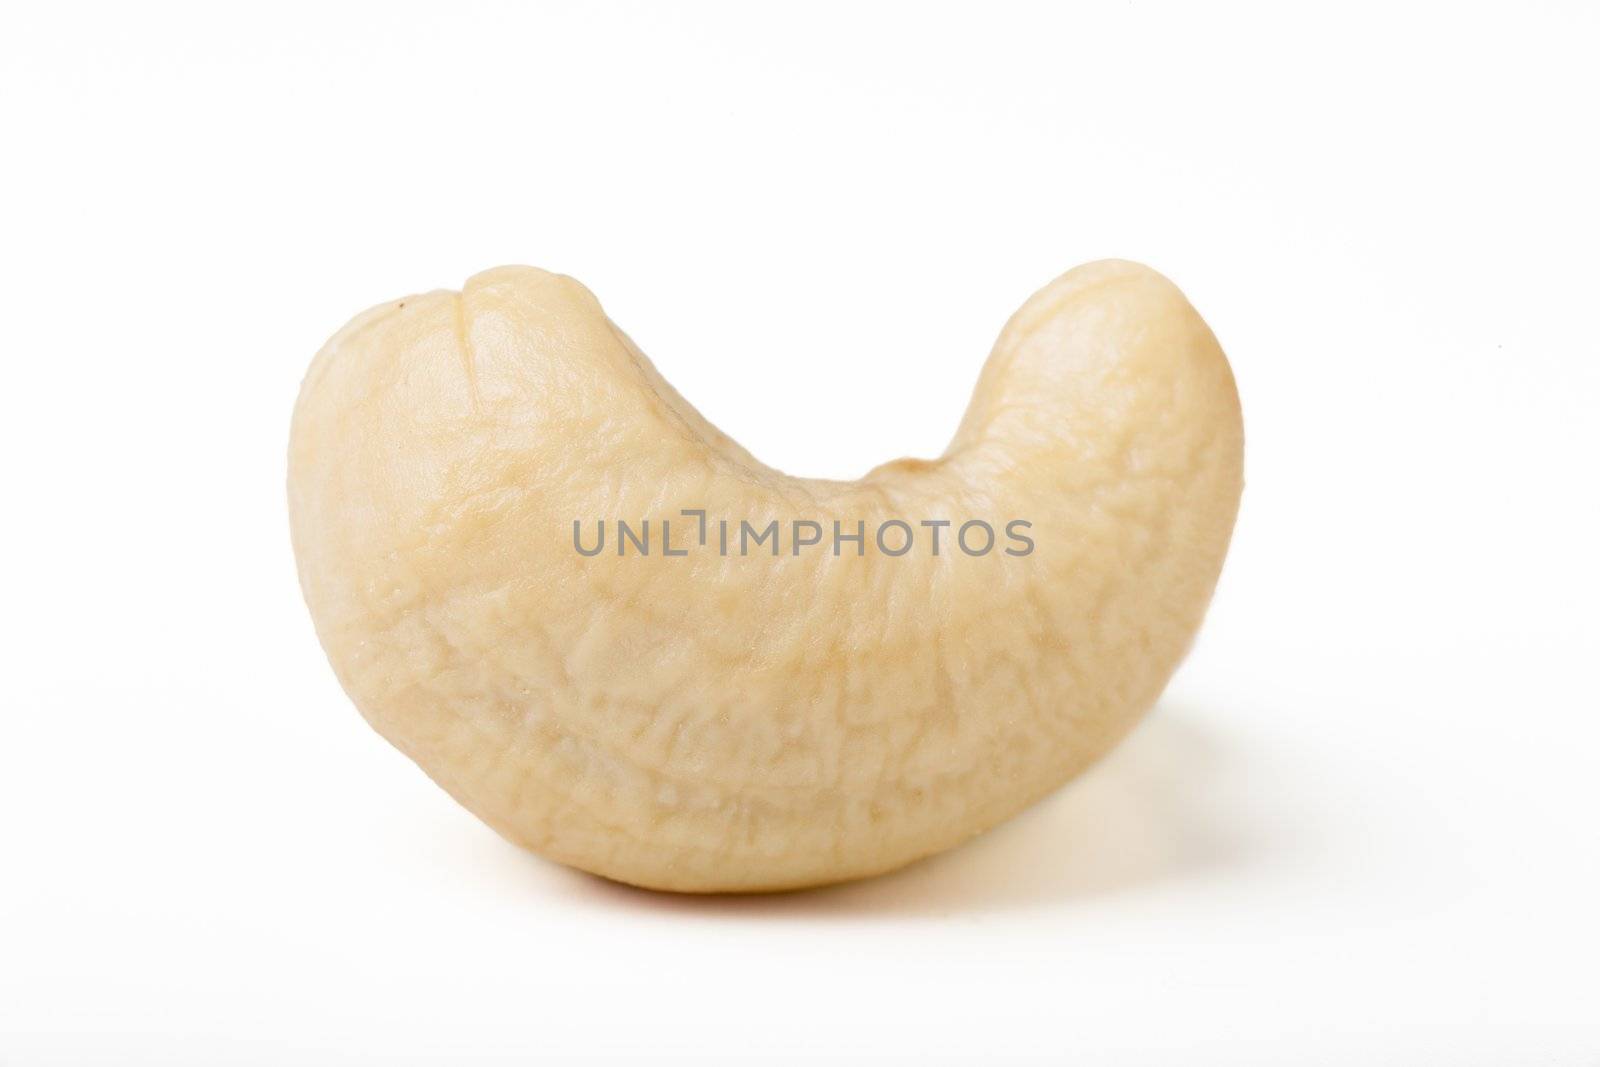 Single cashew nut isolated on white background.